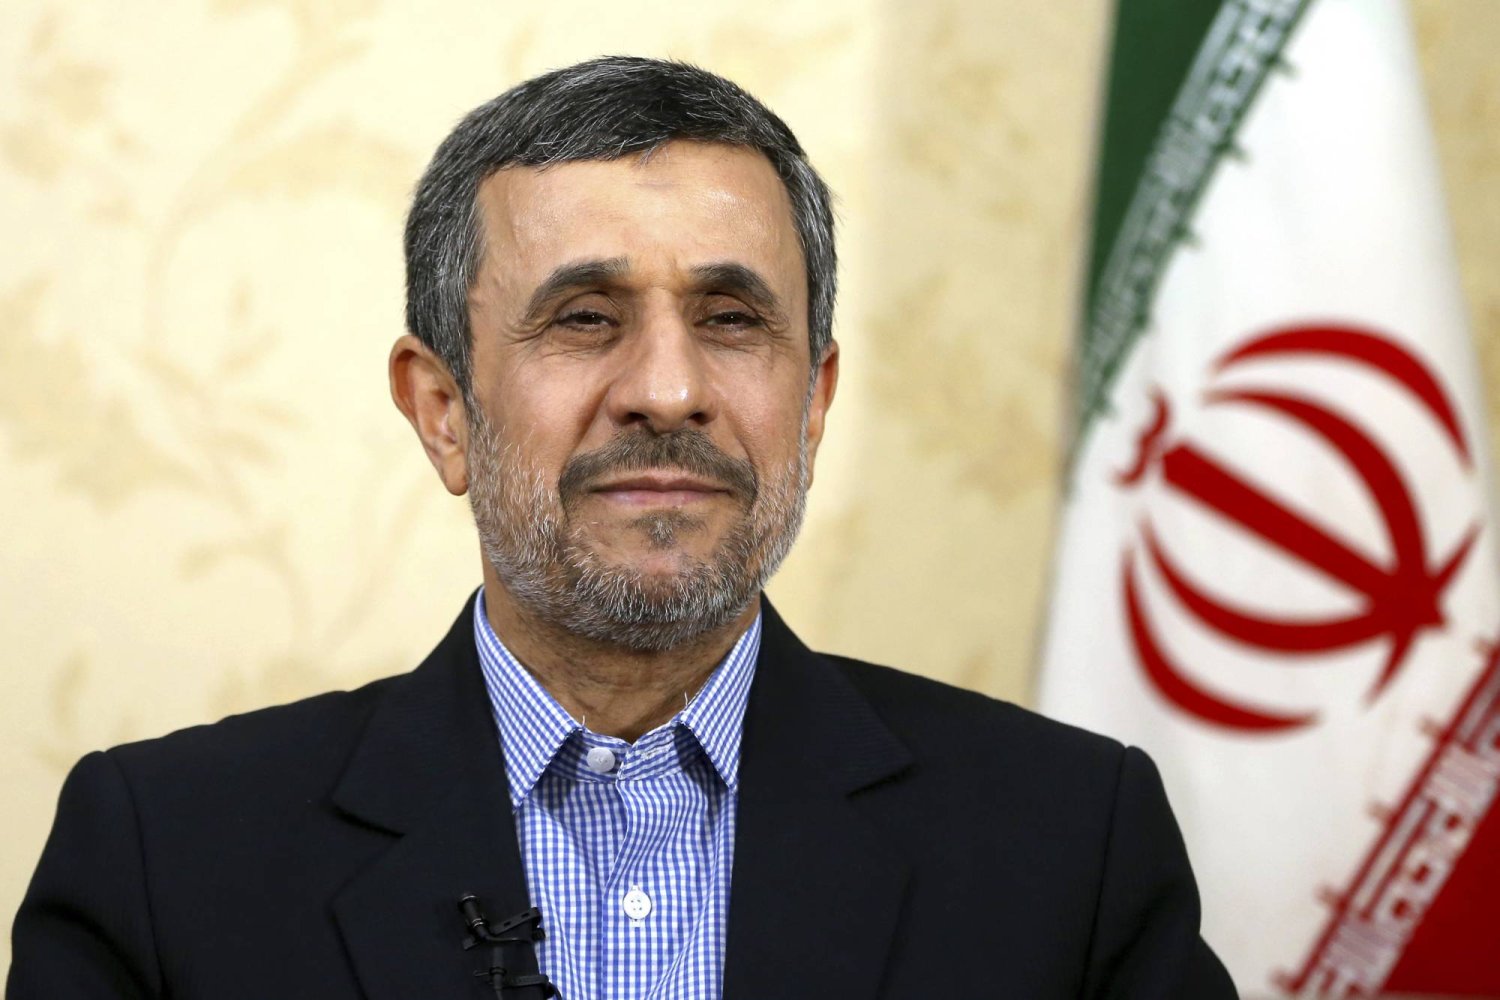  الرئيس الإيراني الأسبق محمود أحمدي نجاد يترشح للانتخابات الرئاسية المبكرة